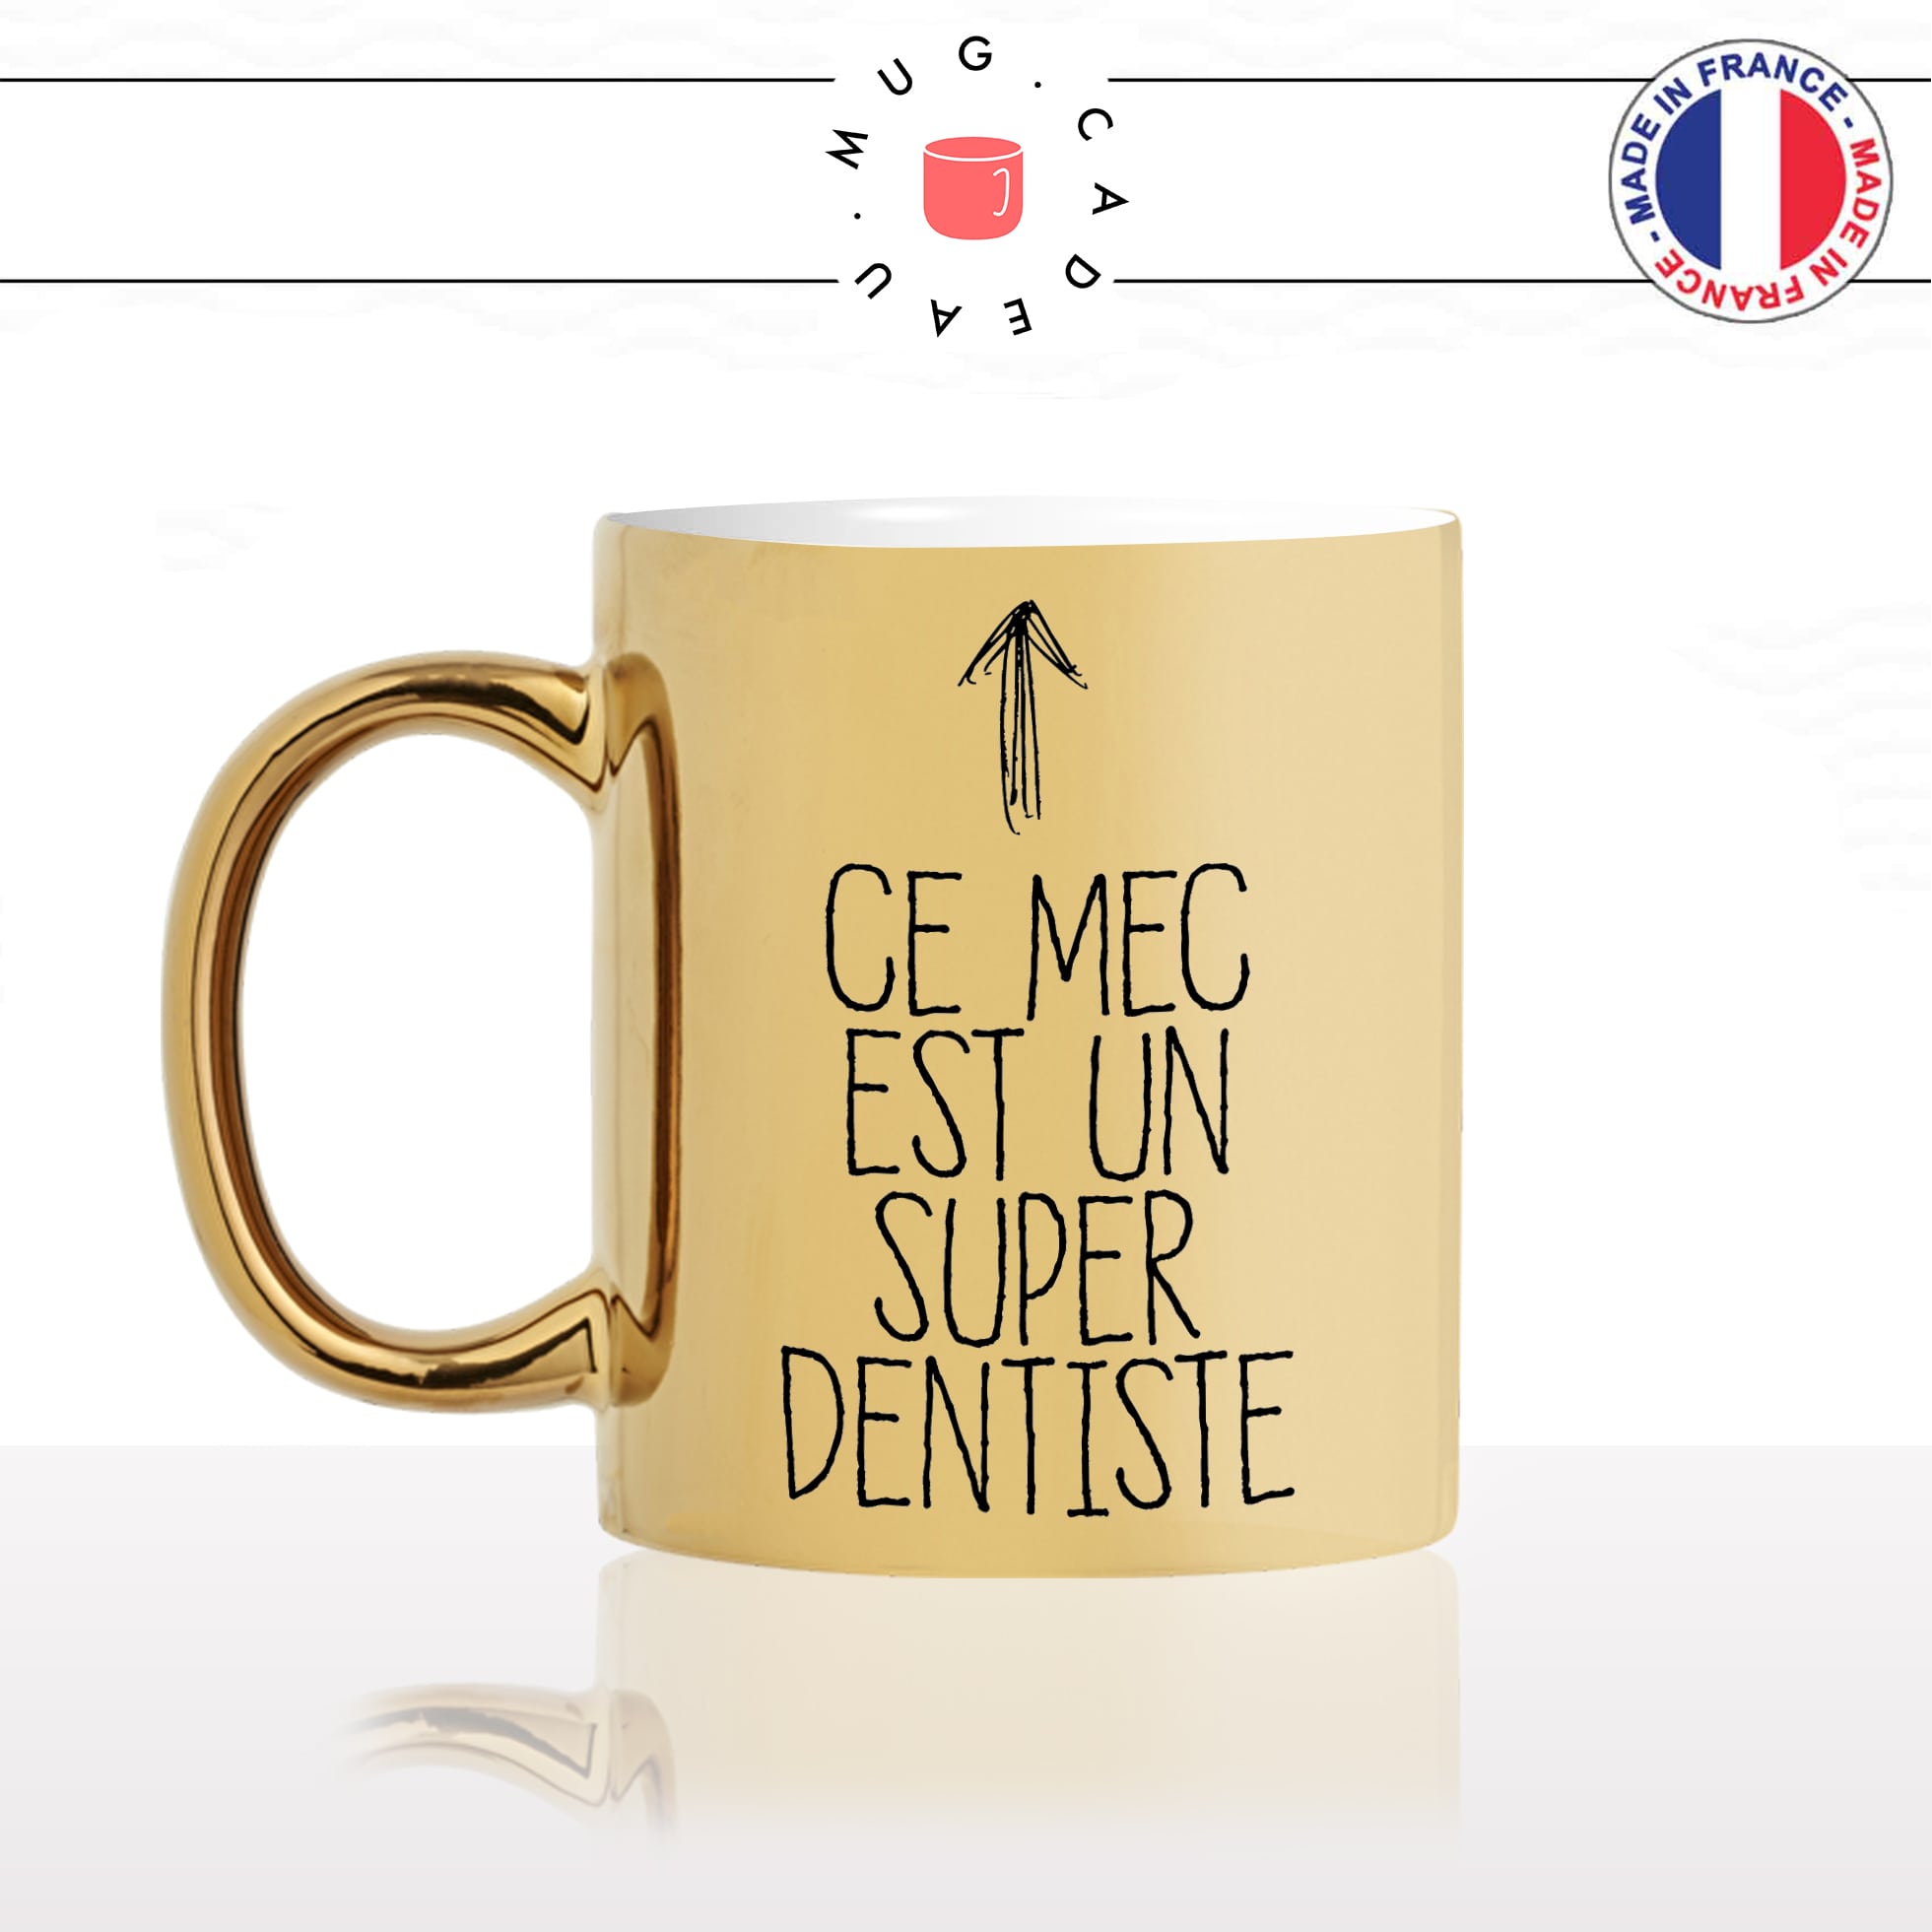 mug-tasse-or-gold-doré-ce-mec-est-un-super-dentiste-médecin-chirurgien-dentaire-dents-homme-collegue-humour-fun-idée-cadeau-café-thé-min